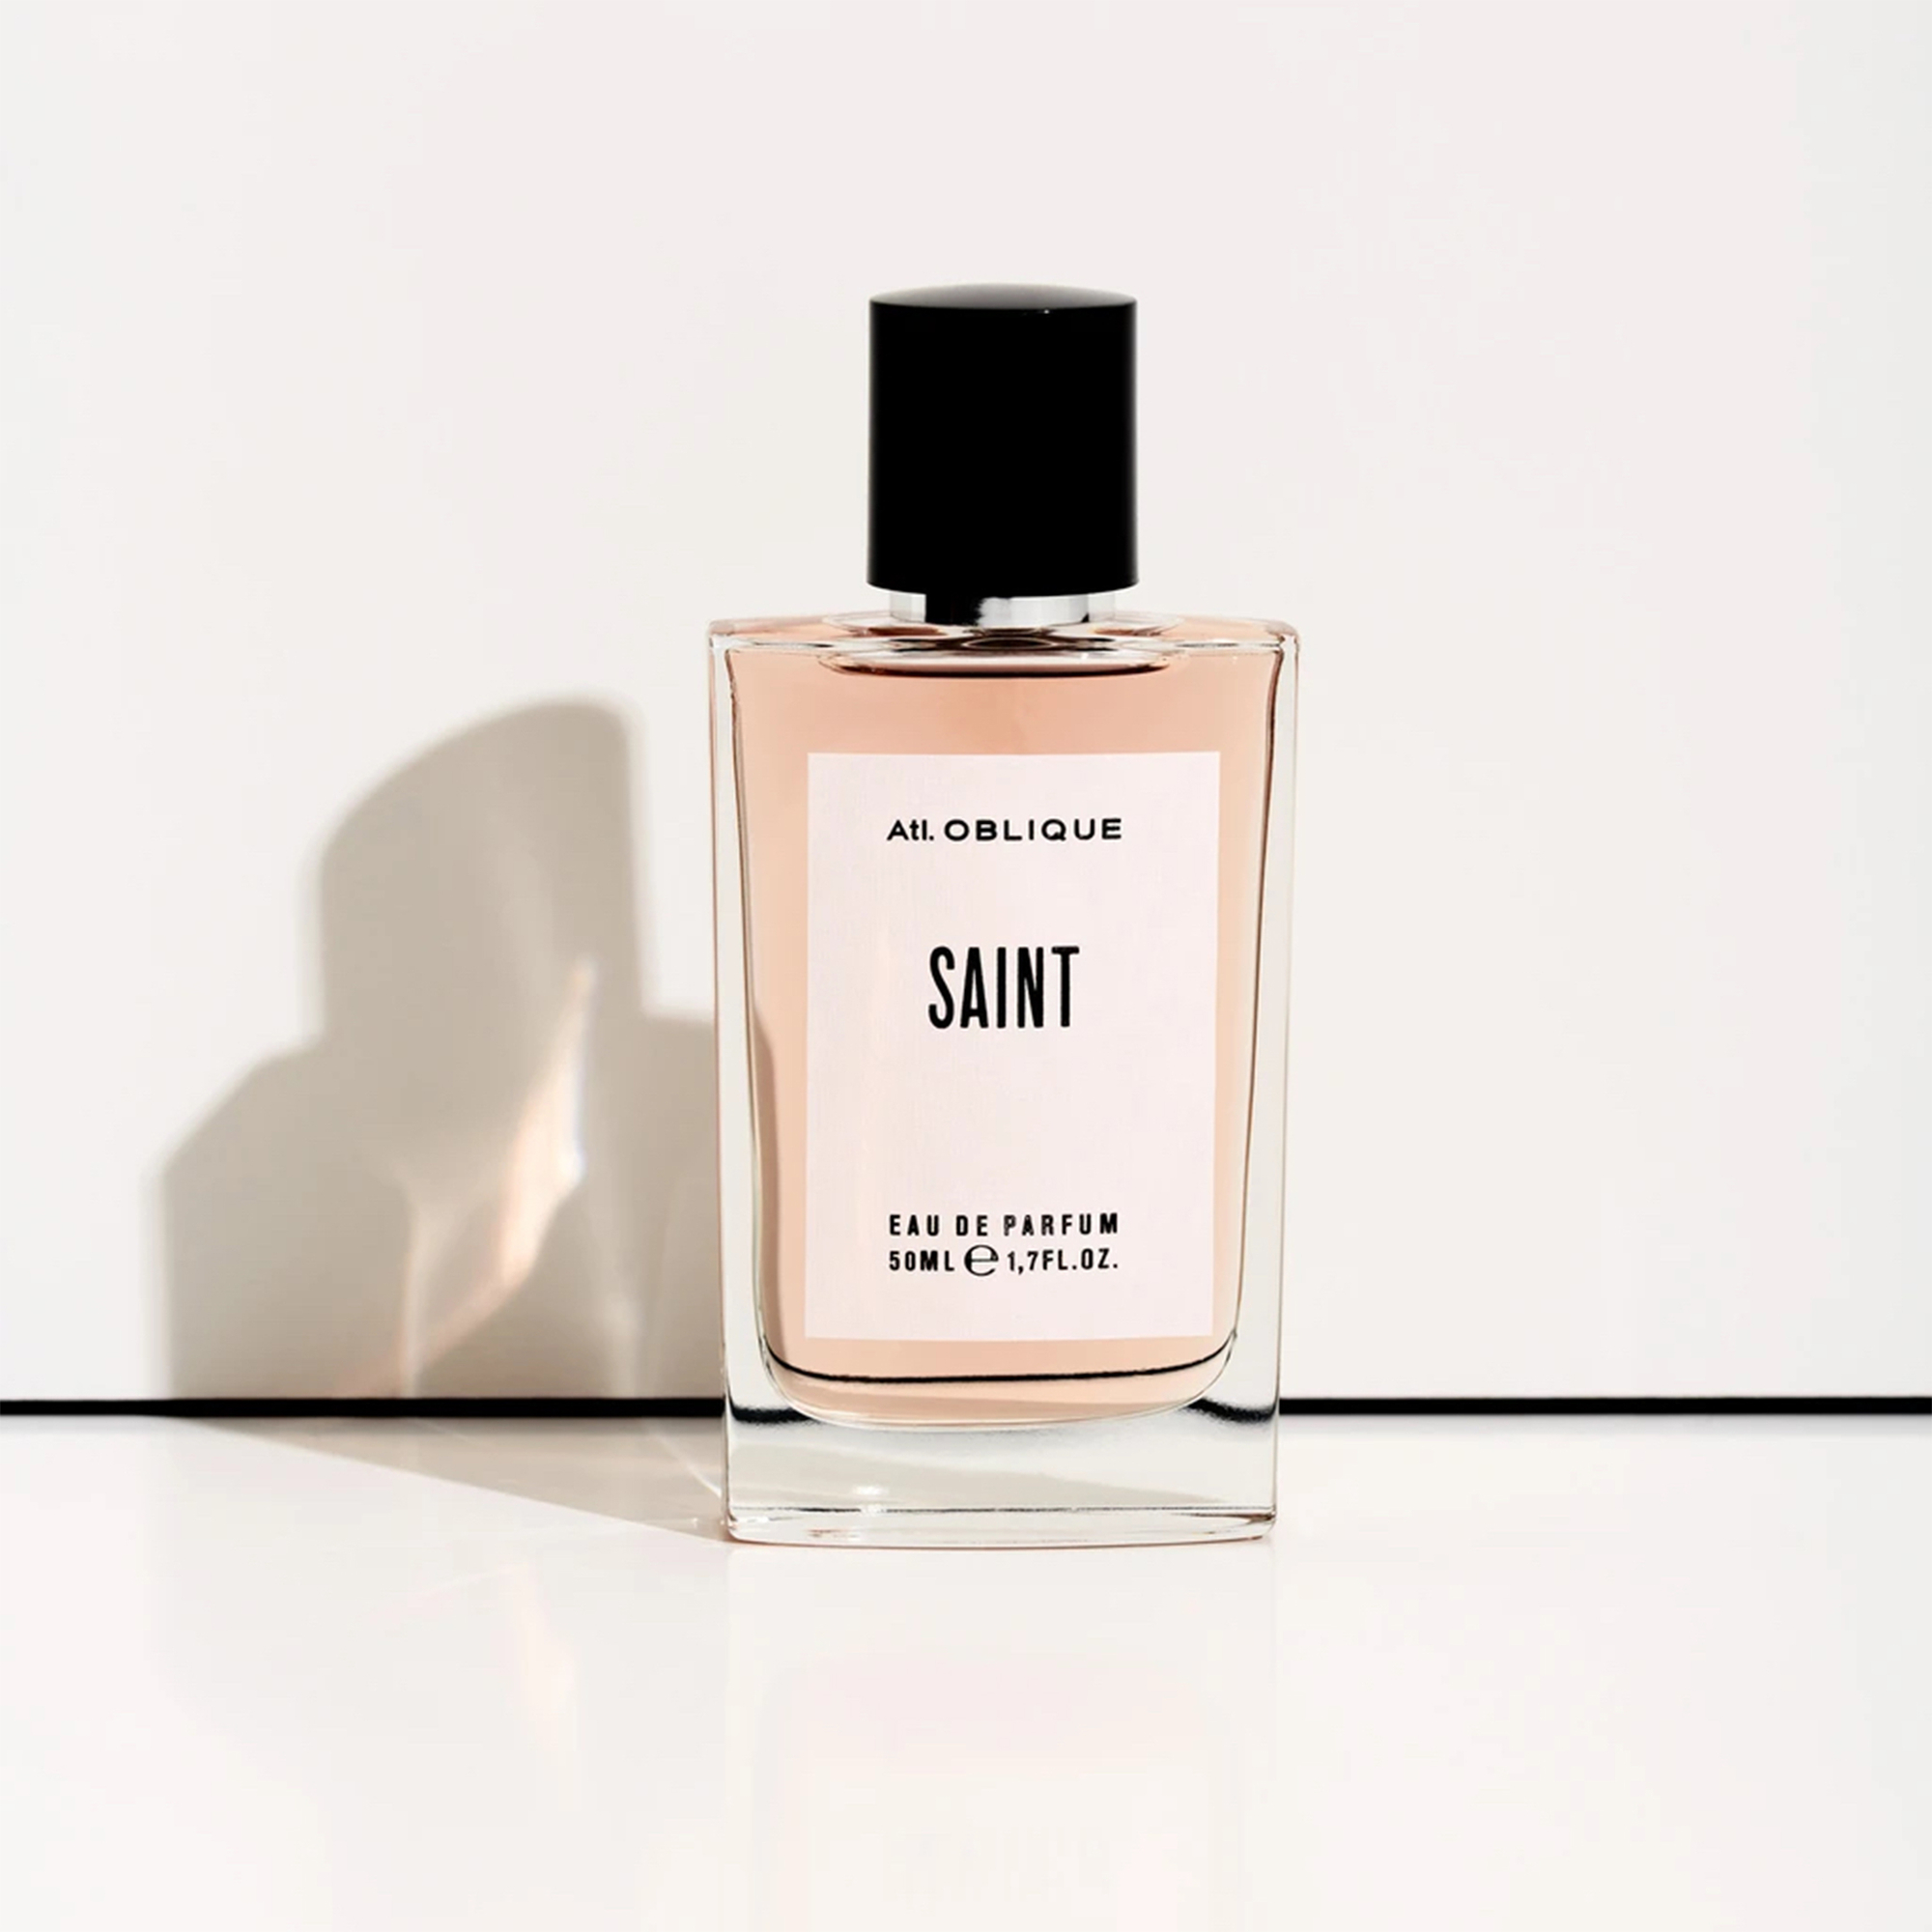 Atelier Oblique - Saint Eau de Parfum